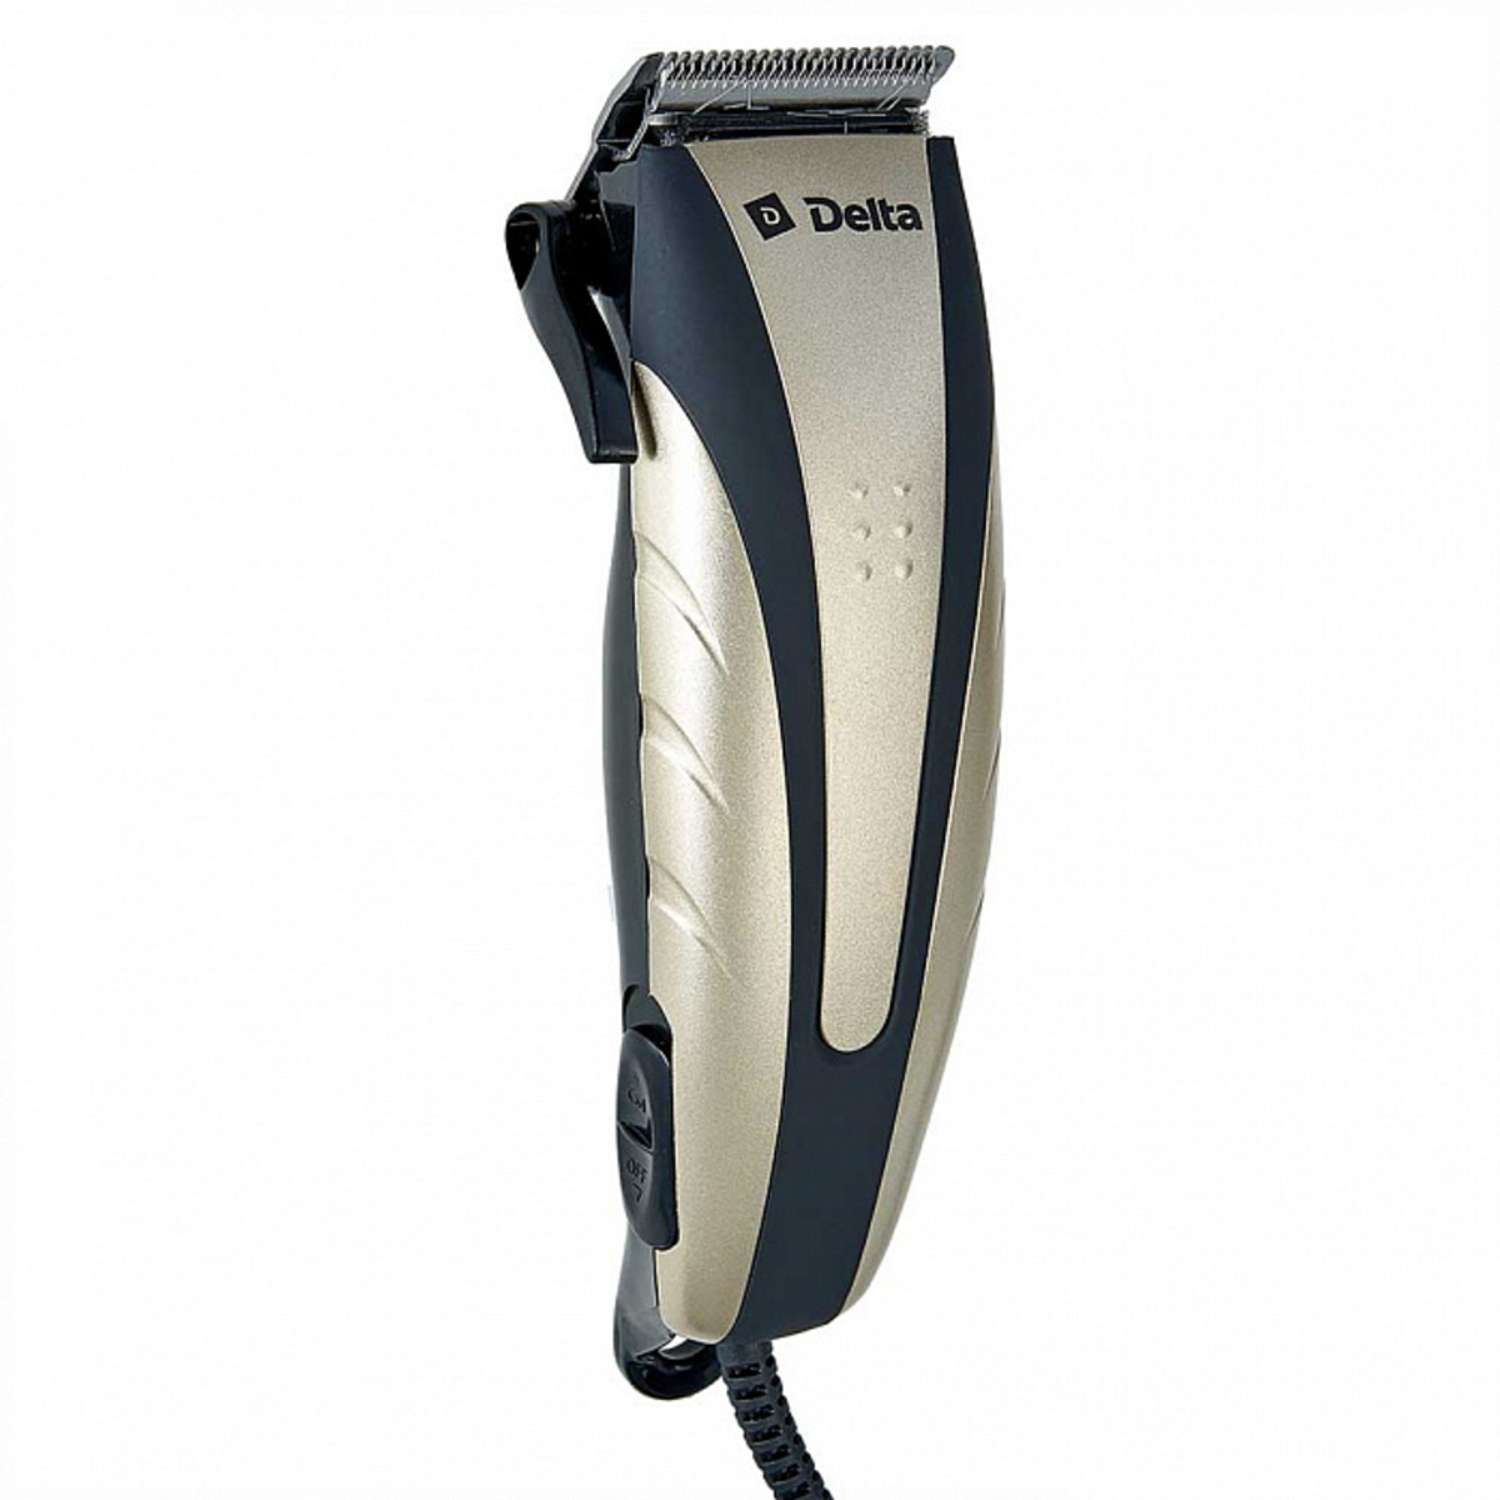 Машинка для стрижки волос Delta DL-4054 шампанское 10Вт 4 съемных гребня - фото 1